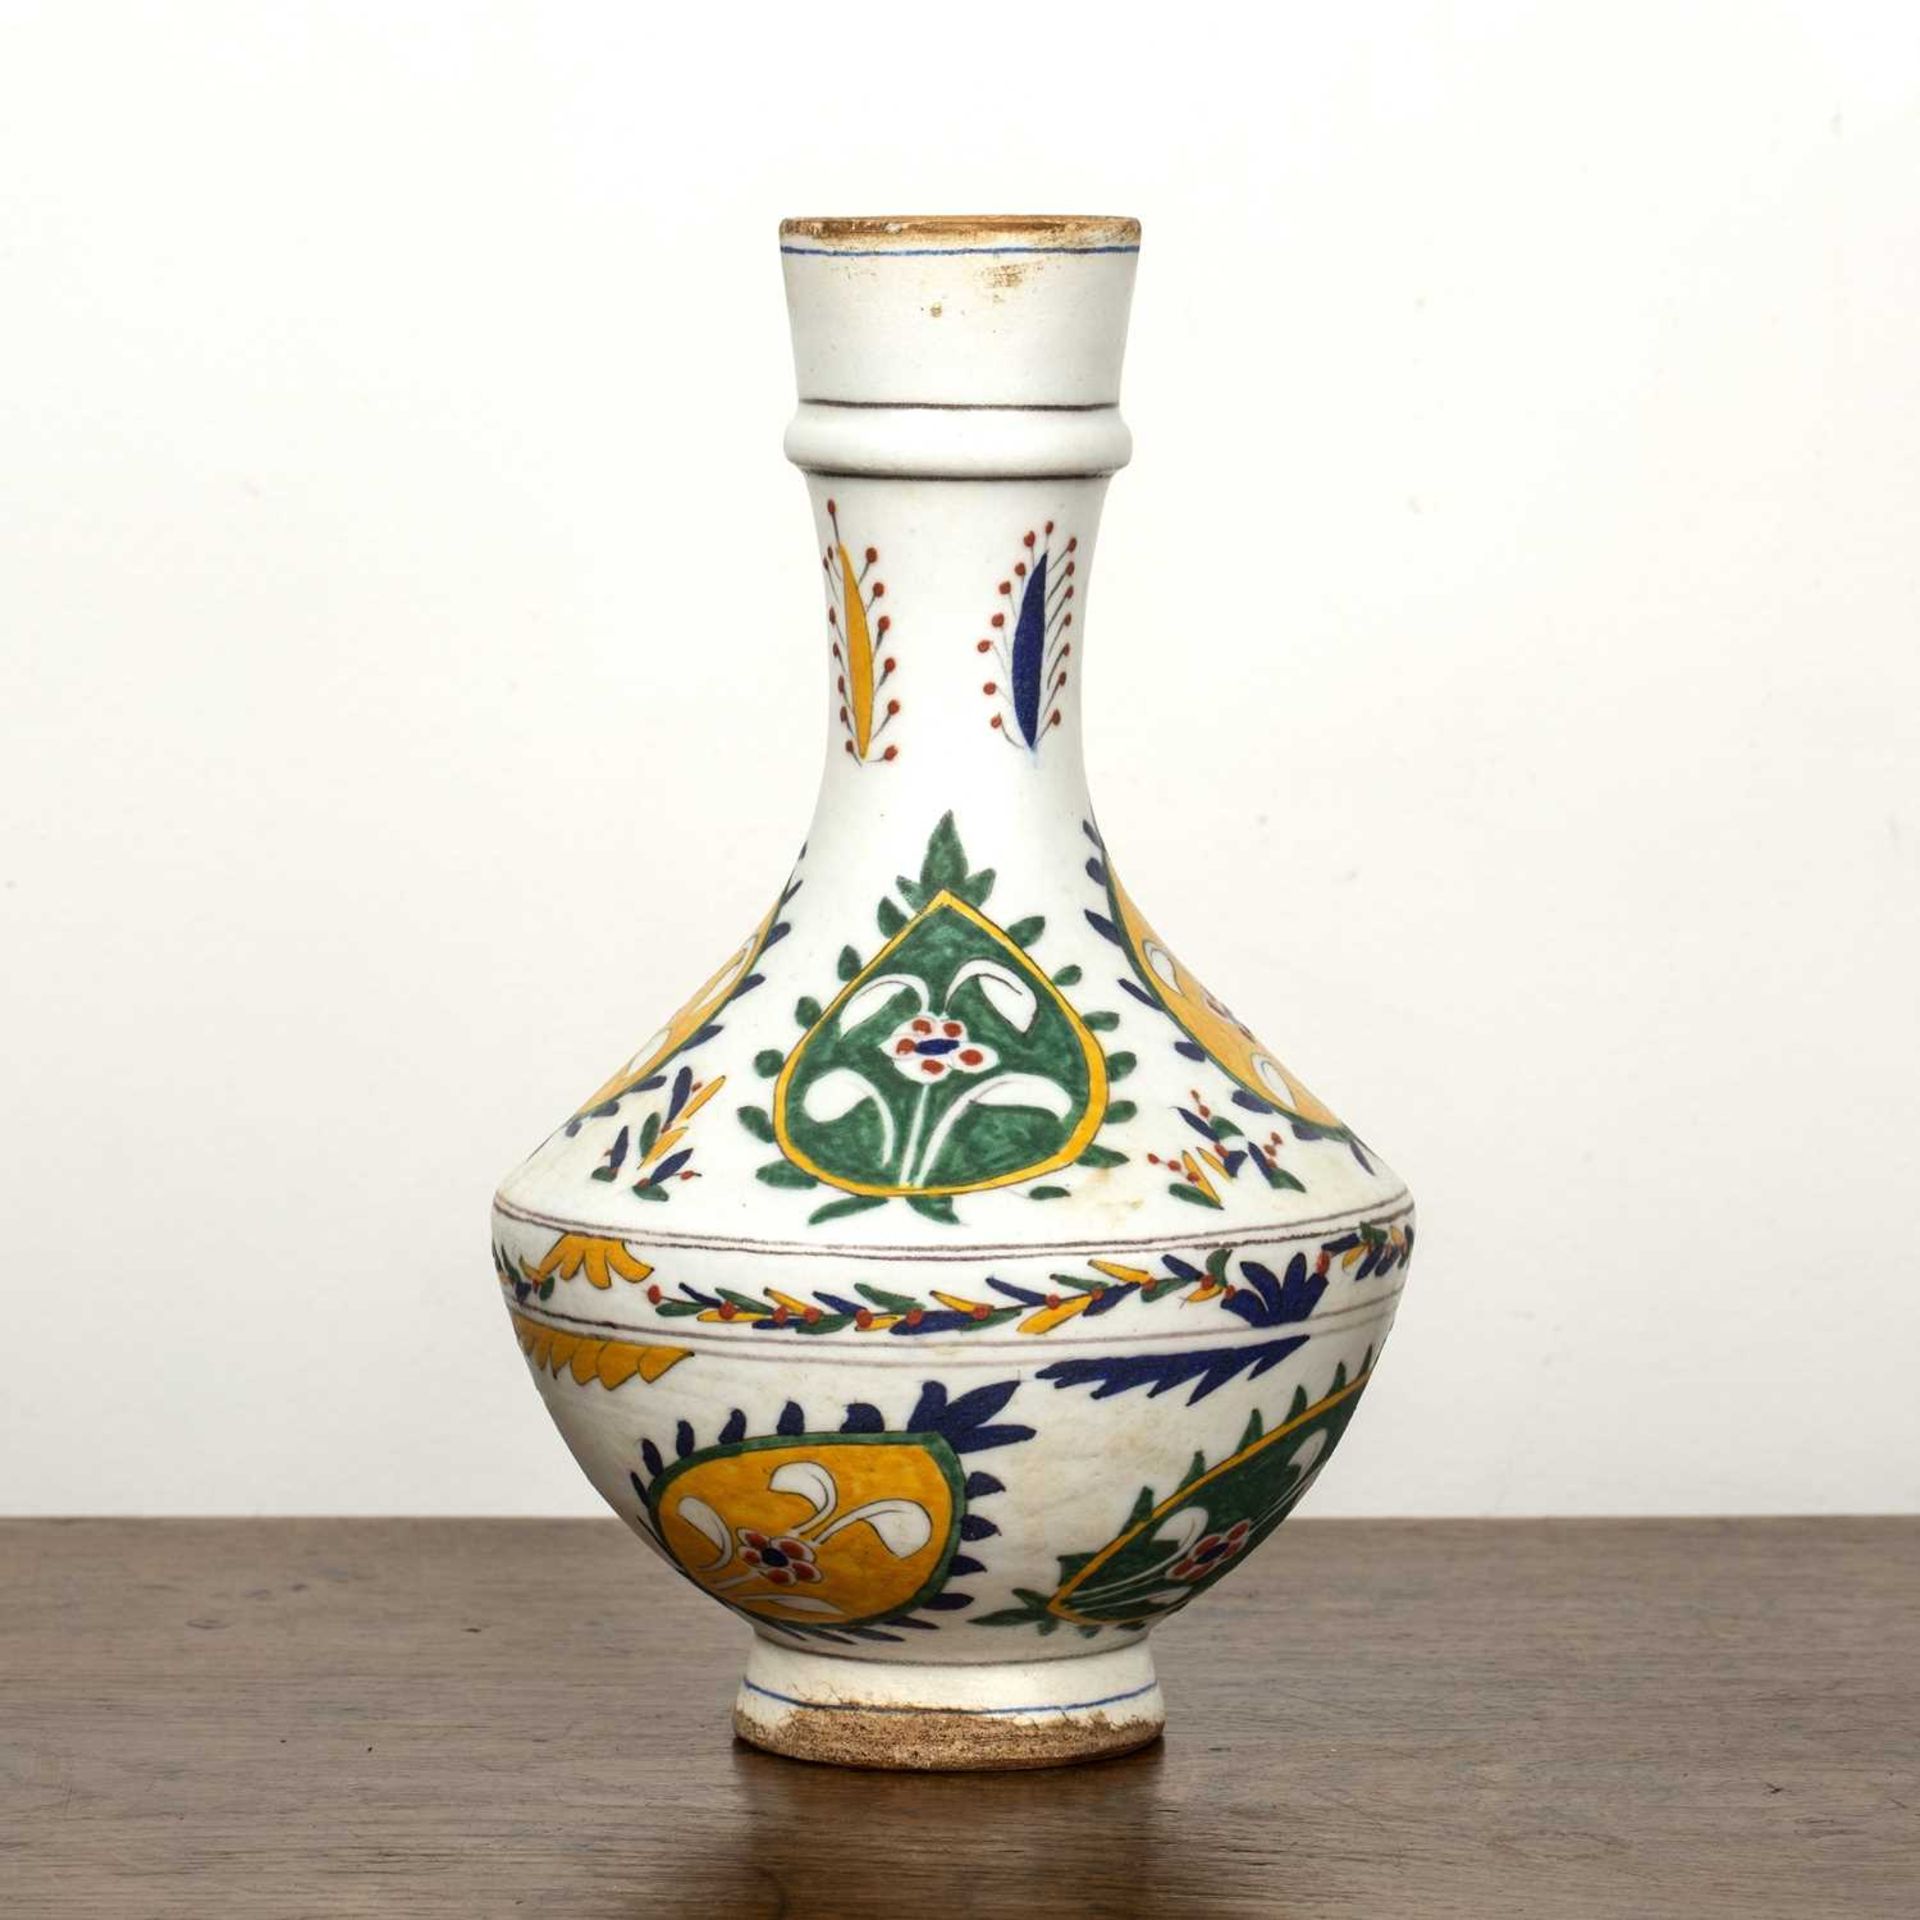 Kutahaya pottery vase Turkey, Turkey 18th/19th Century of white ground with painted leaf-shaped